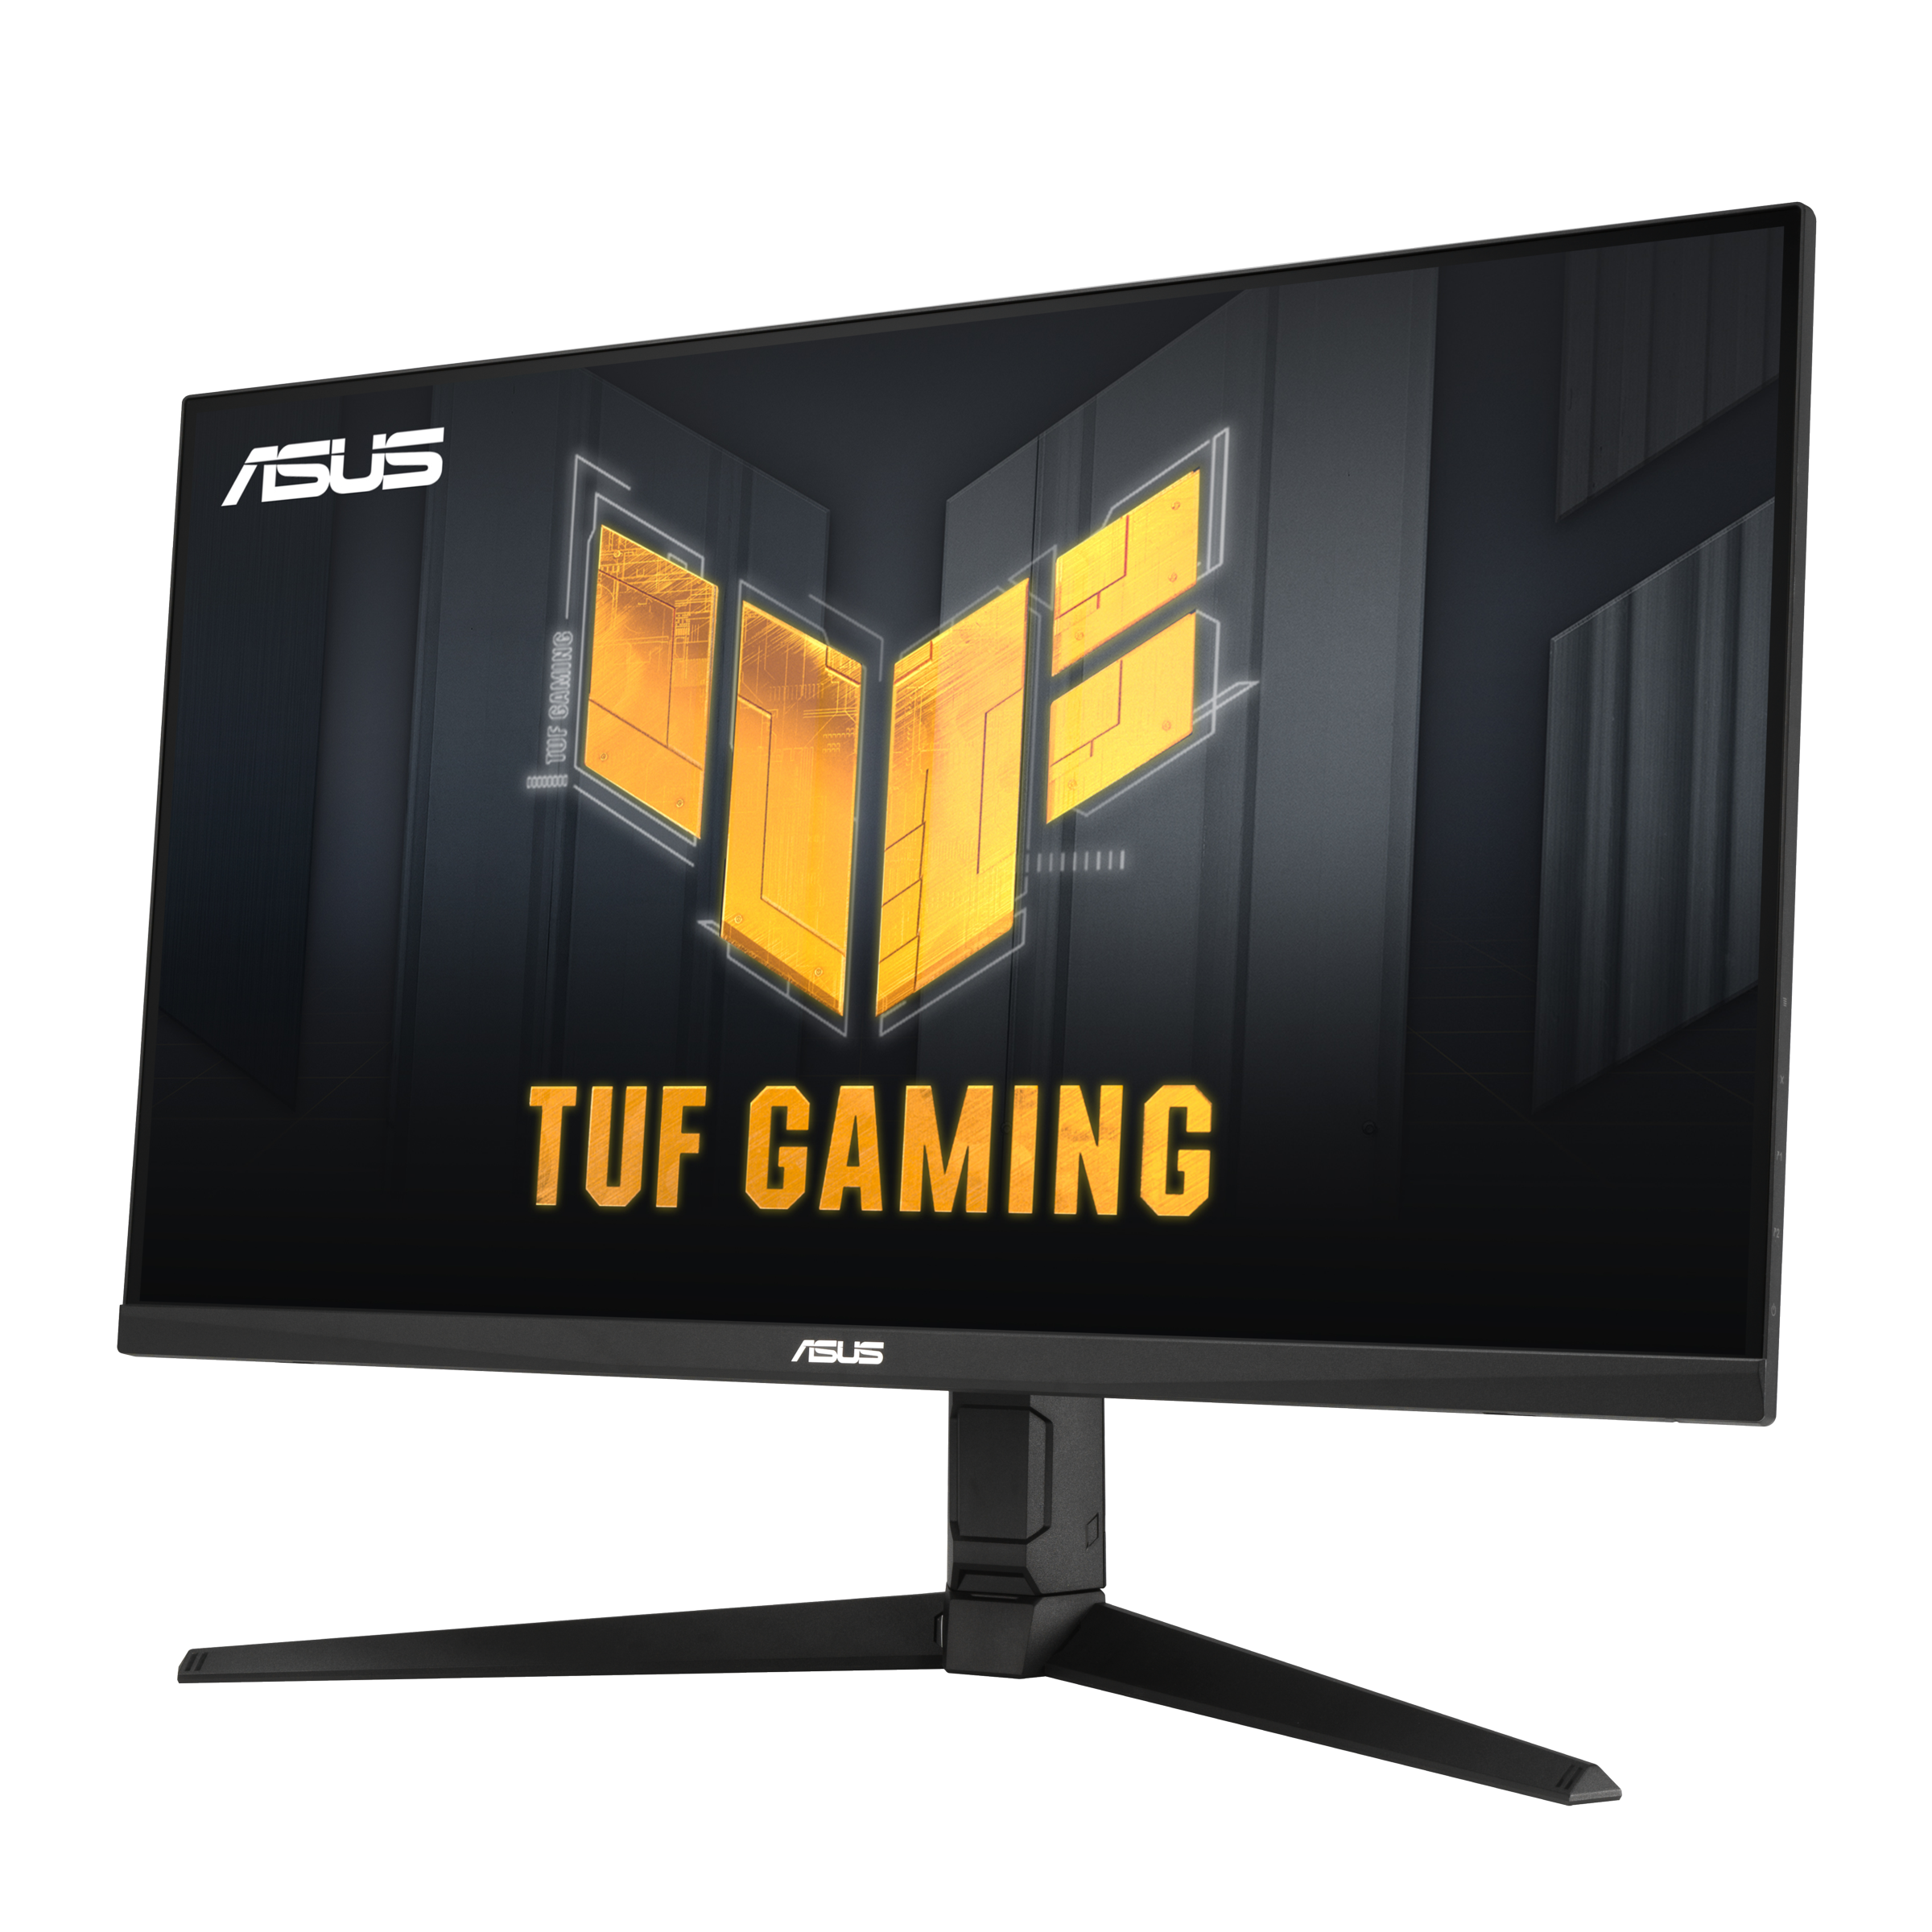 Immagine pubblicata in relazione al seguente contenuto: ASUS introduce il monitor TUF Gaming VG32AQL1A con pannello IPS QHD da 1ms | Nome immagine: news32277_ASUS-TUF-Gaming-VG32AQL1A_2.png